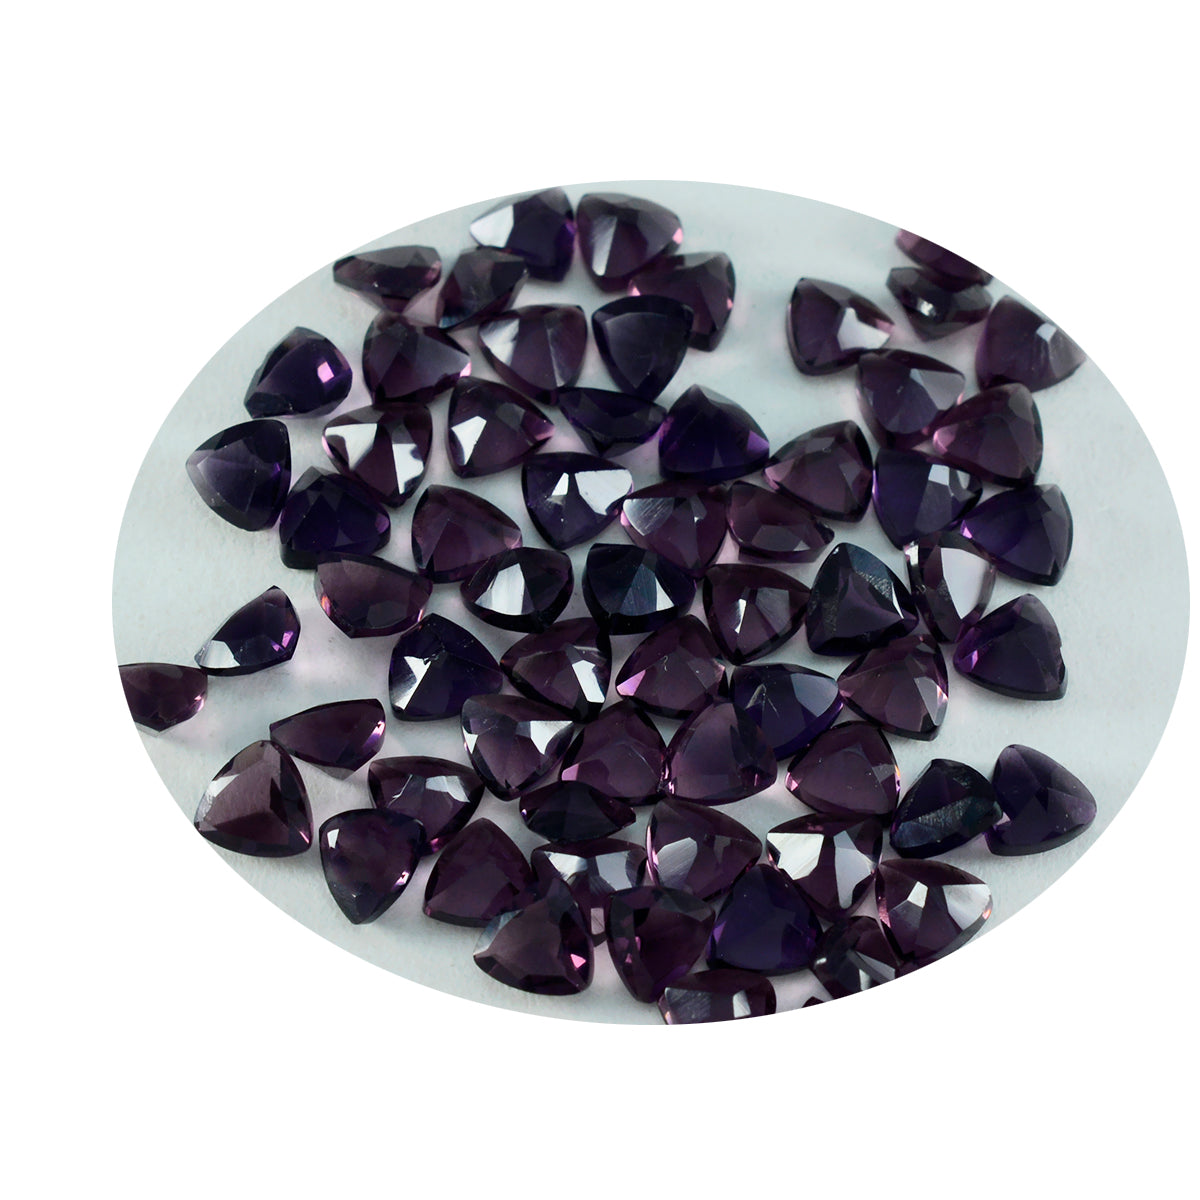 Riyogems 1 pièce améthyste violette cz à facettes 5x5mm forme trillion a1 qualité pierre précieuse en vrac